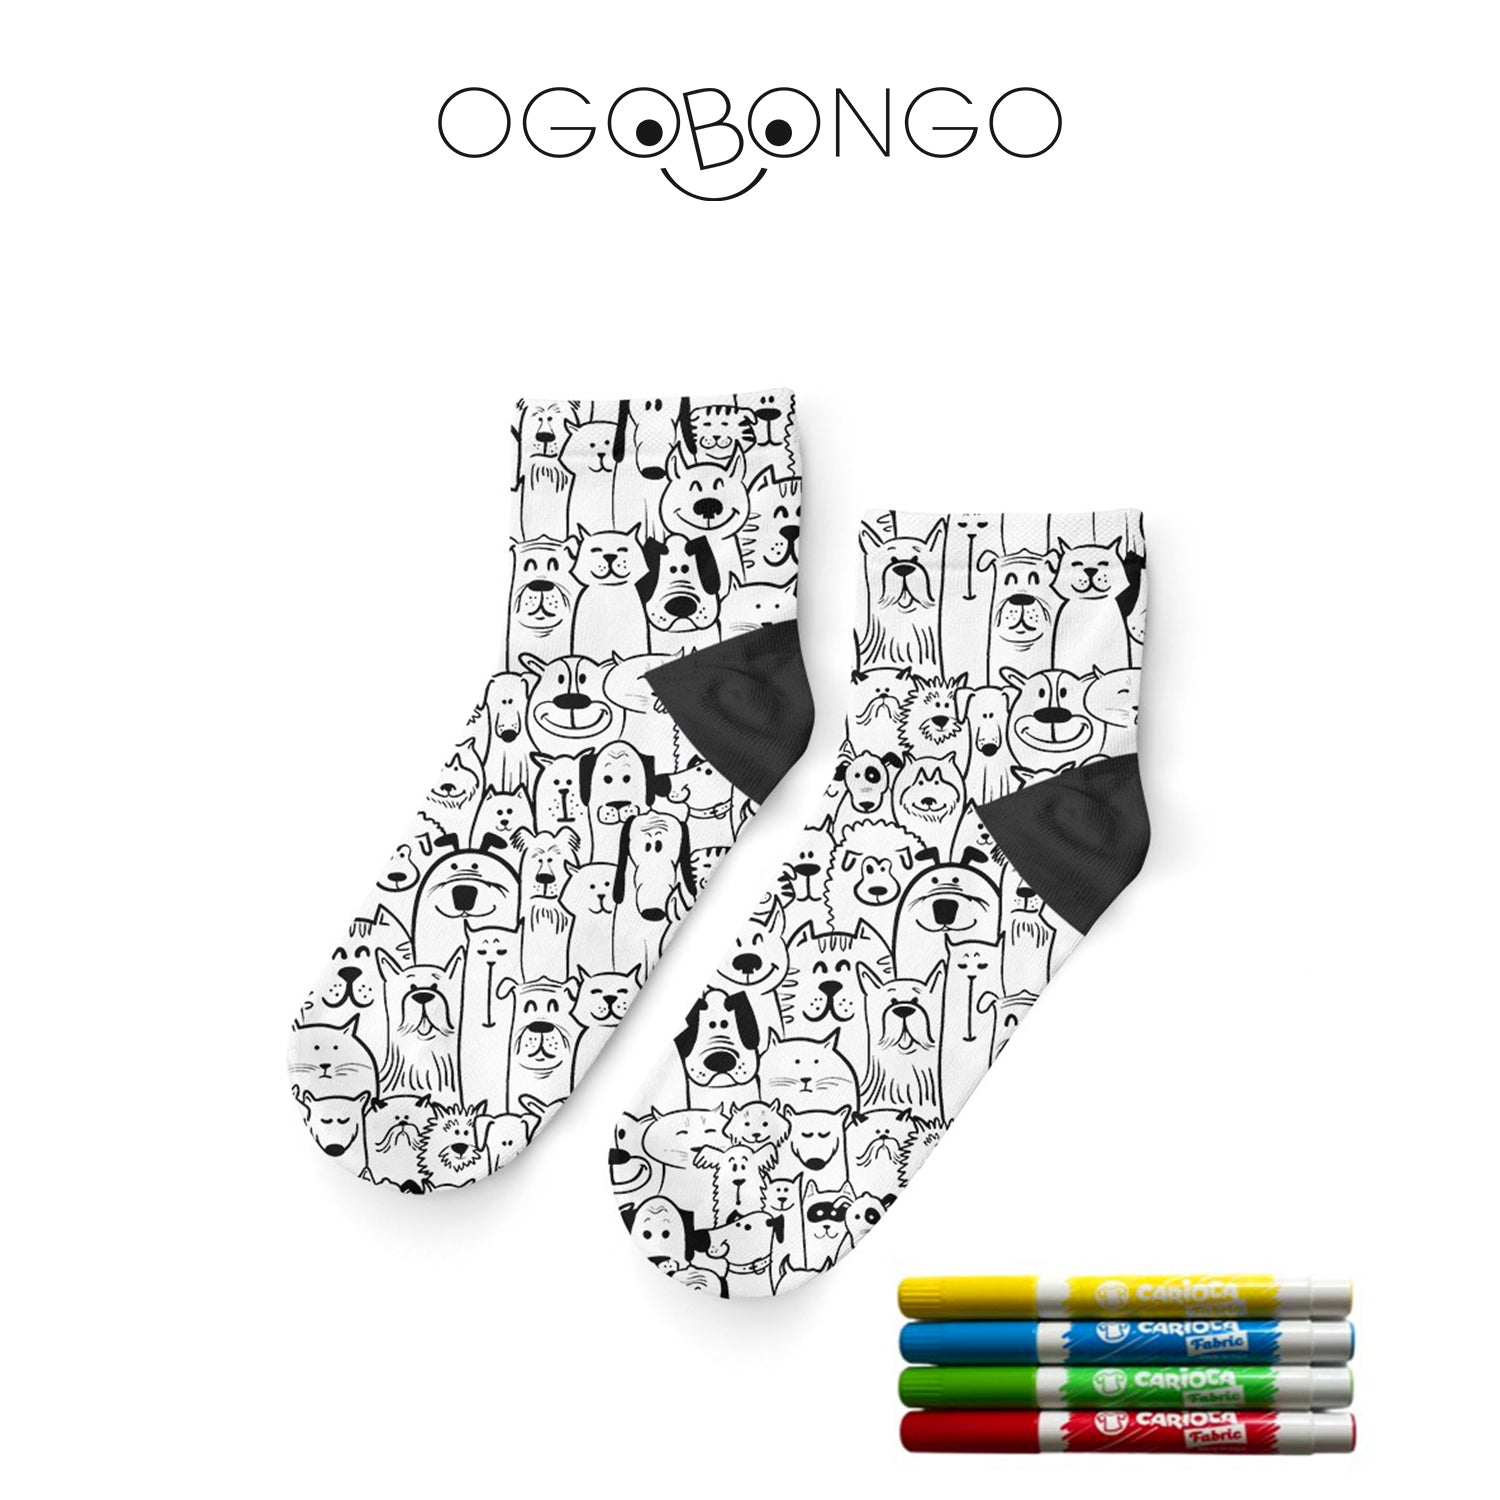 Ogobongo 25'li Boyama Çorap Standı